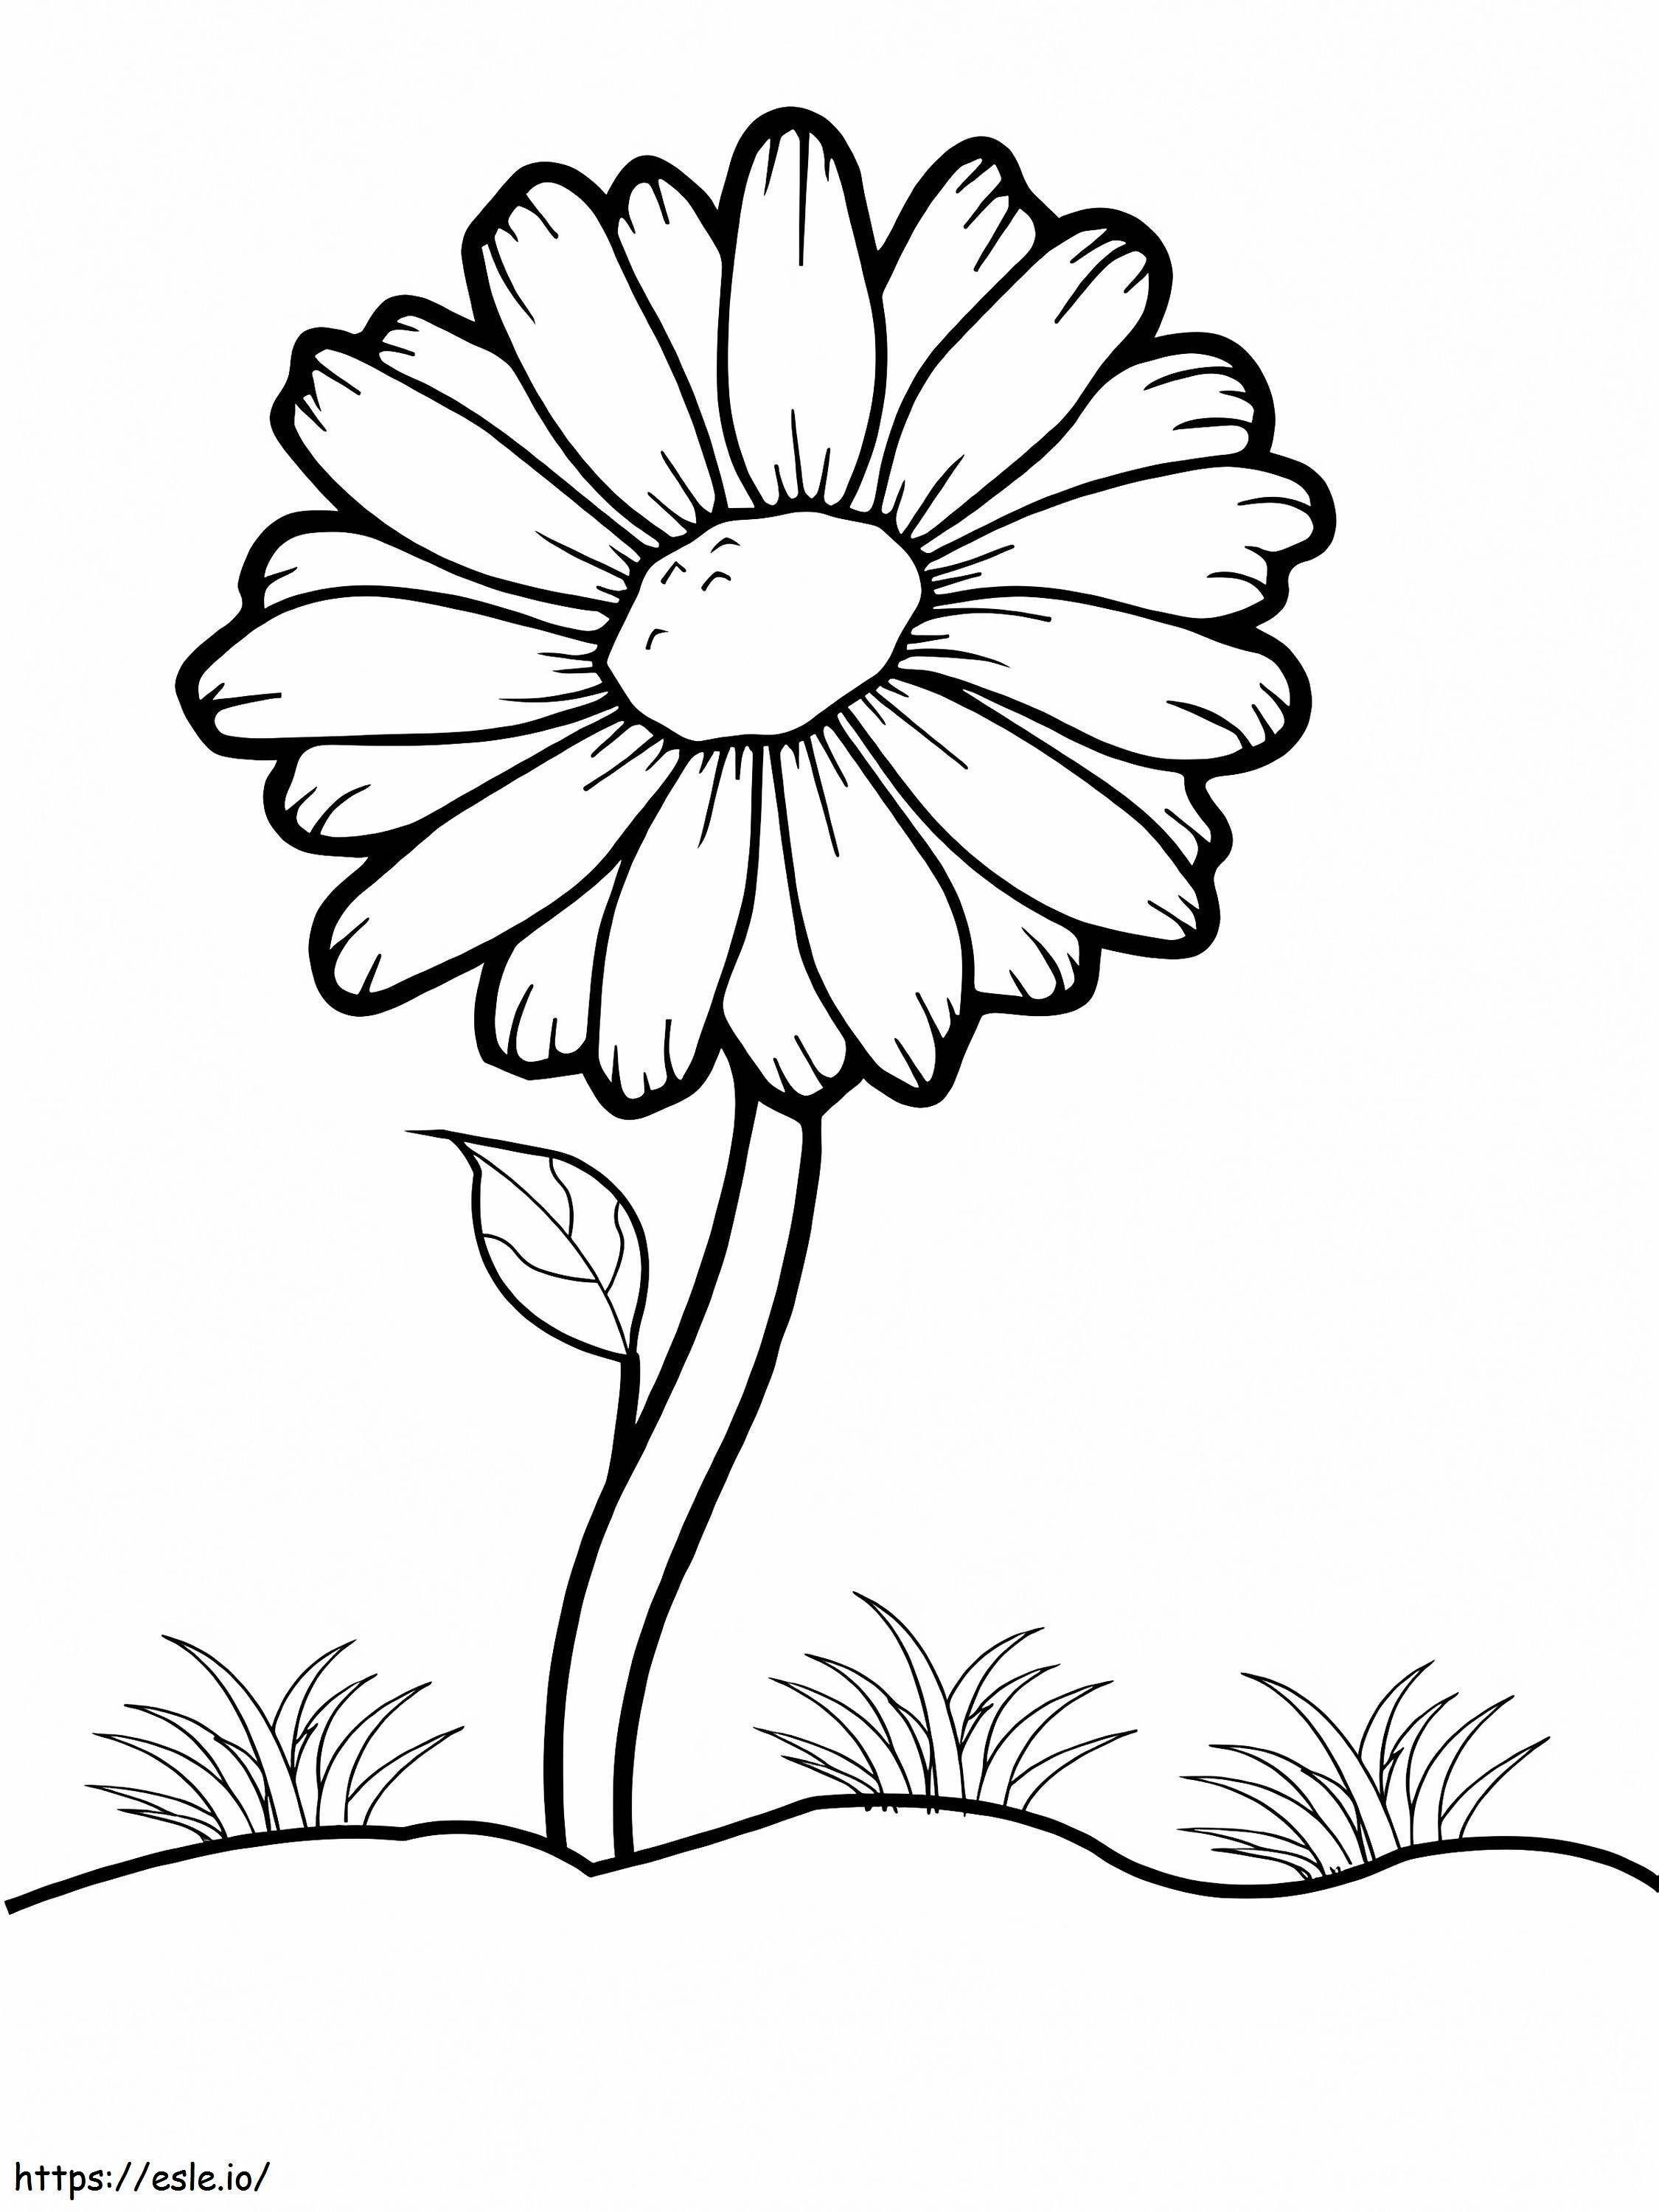 Bunga Daisy yang Mudah Gambar Mewarnai